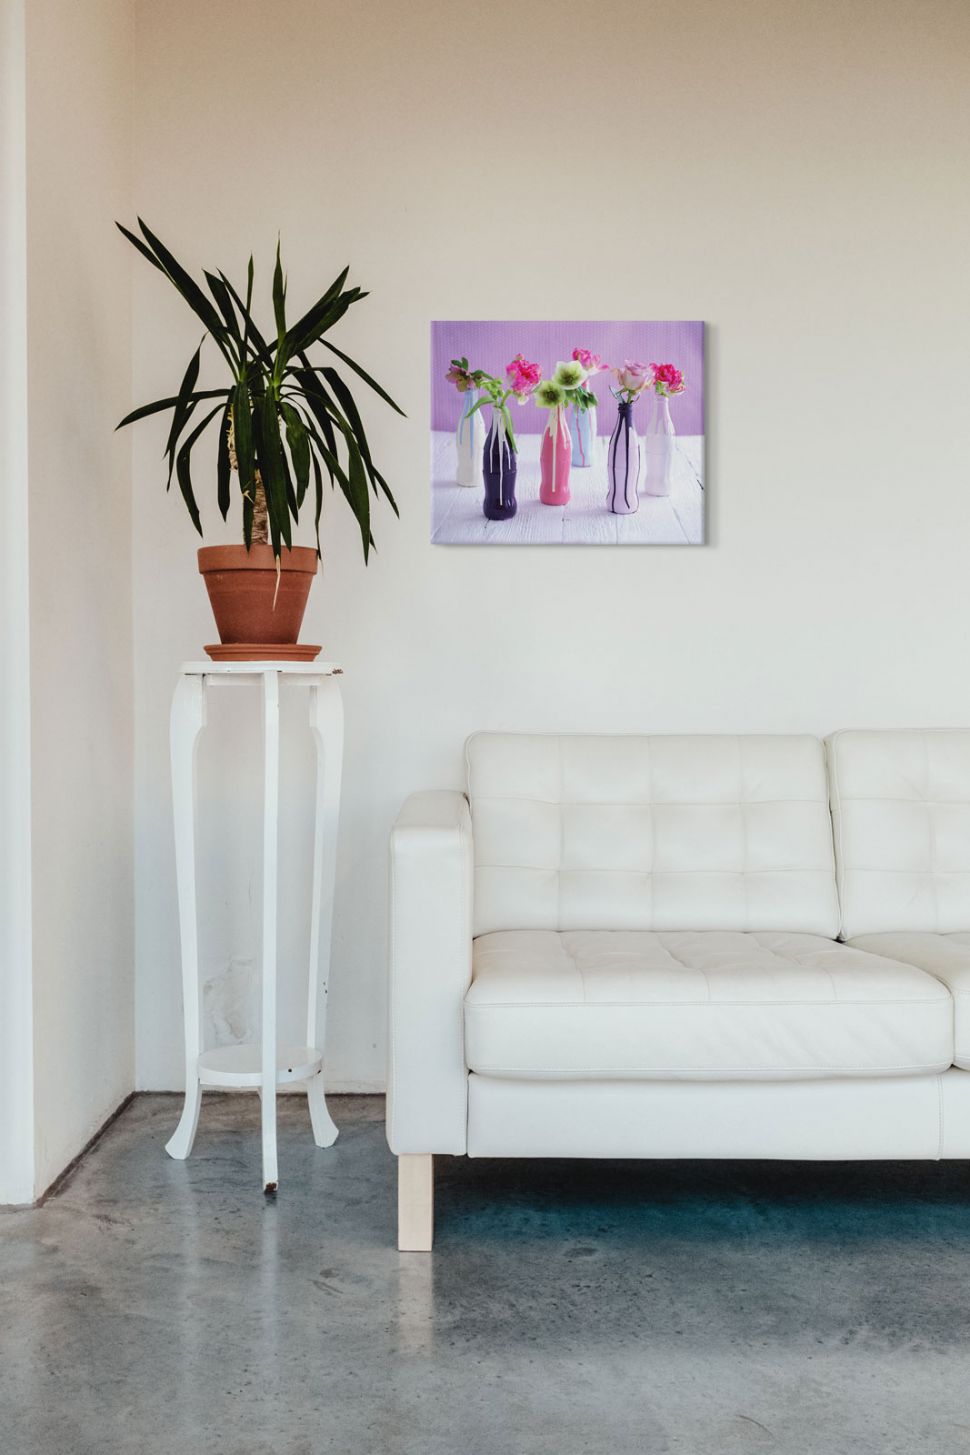 Obraz na płótnie autorstwa Howard Shooter zatytułowany Kwiaty w butelkach w salonie nad kanapą